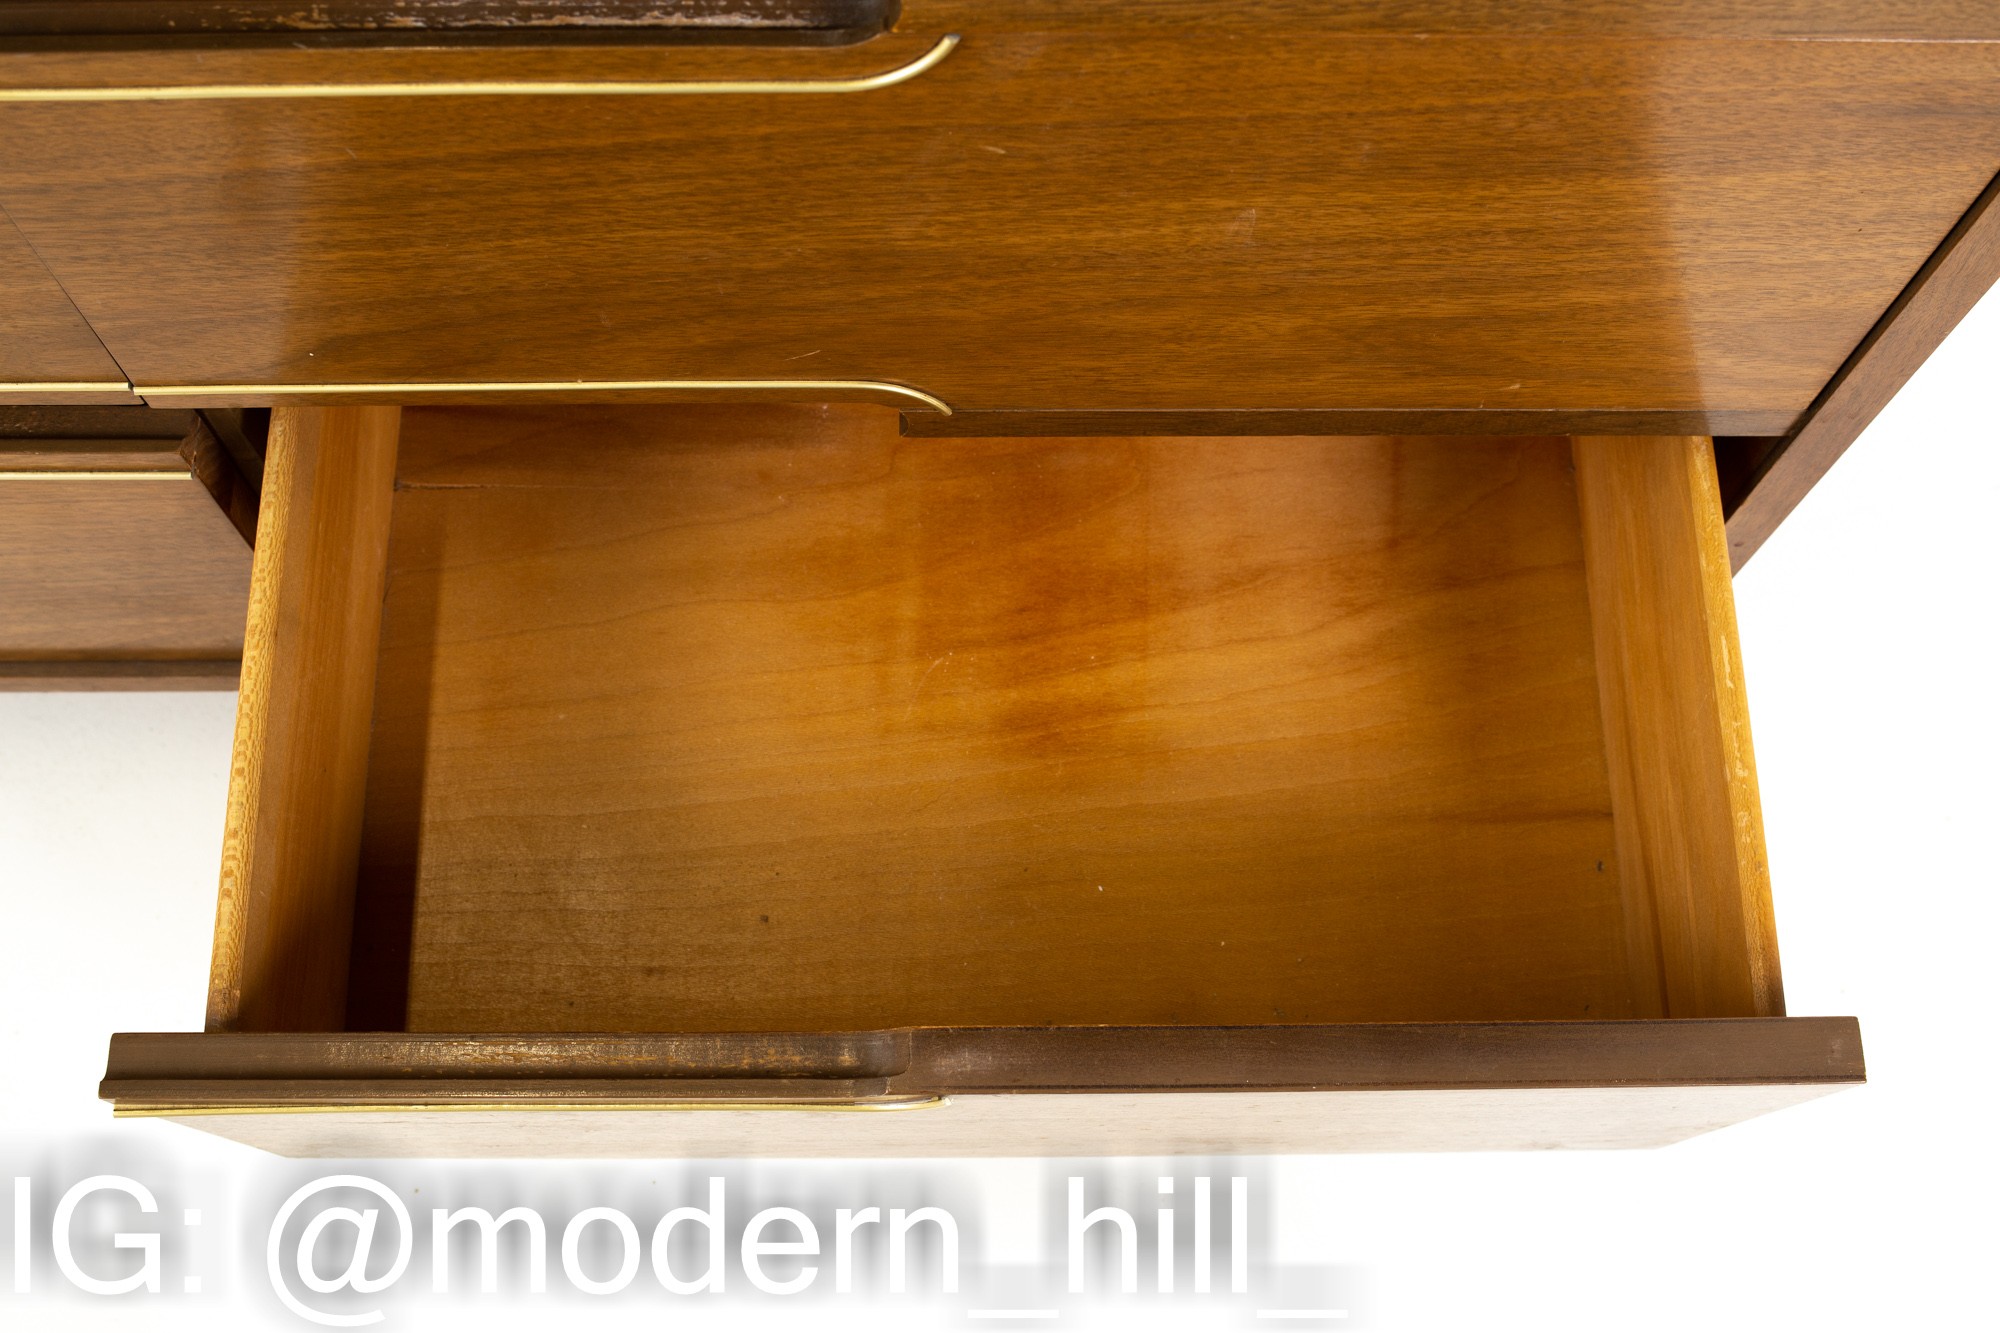 Kroehler Mid Century Walnut and Brass 9 Drawer Lowboy Dresser